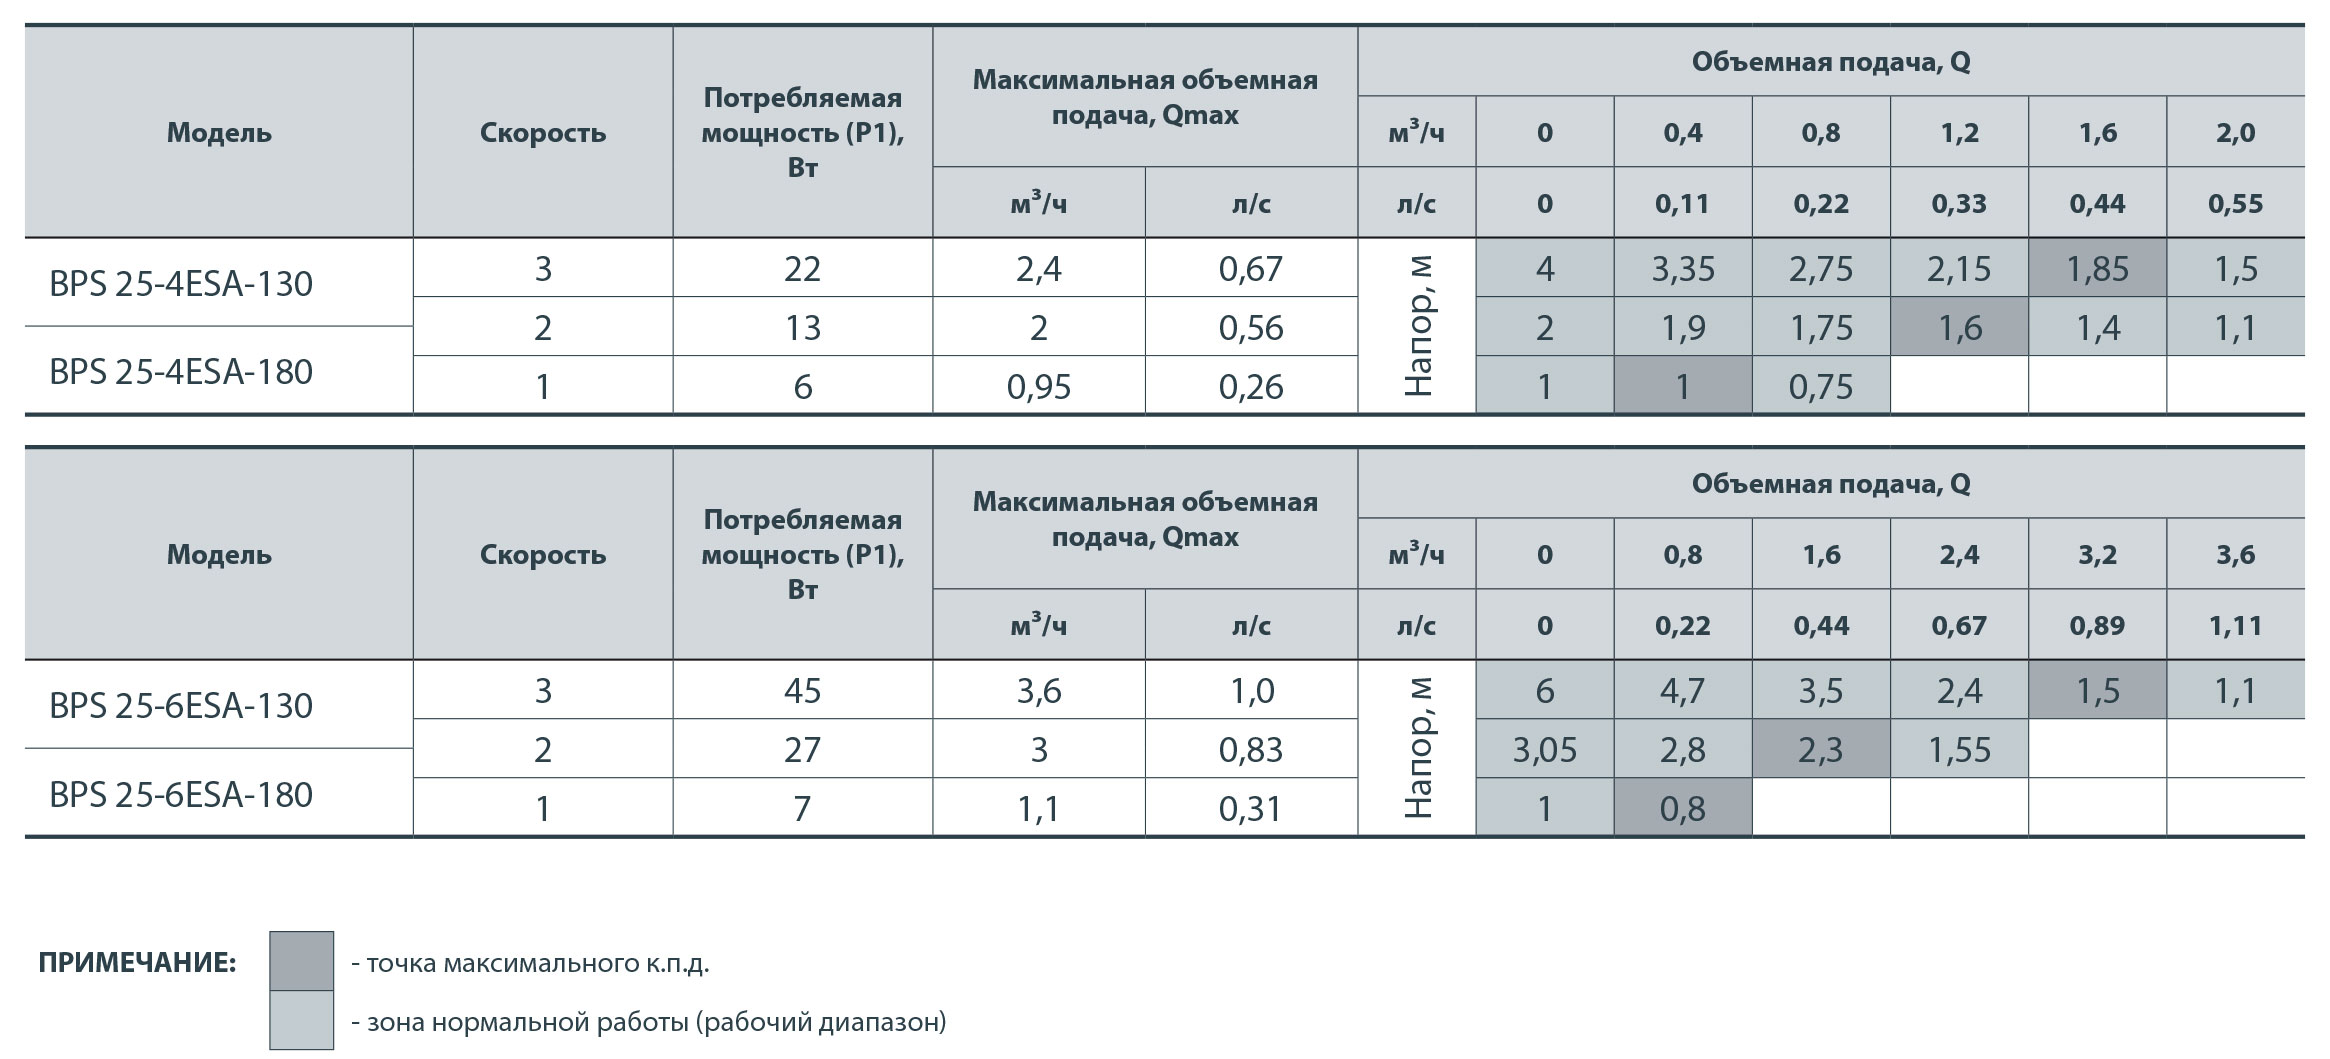 Зведена таблиця характеристик циркуляційних насосів серії BPS-ESA: